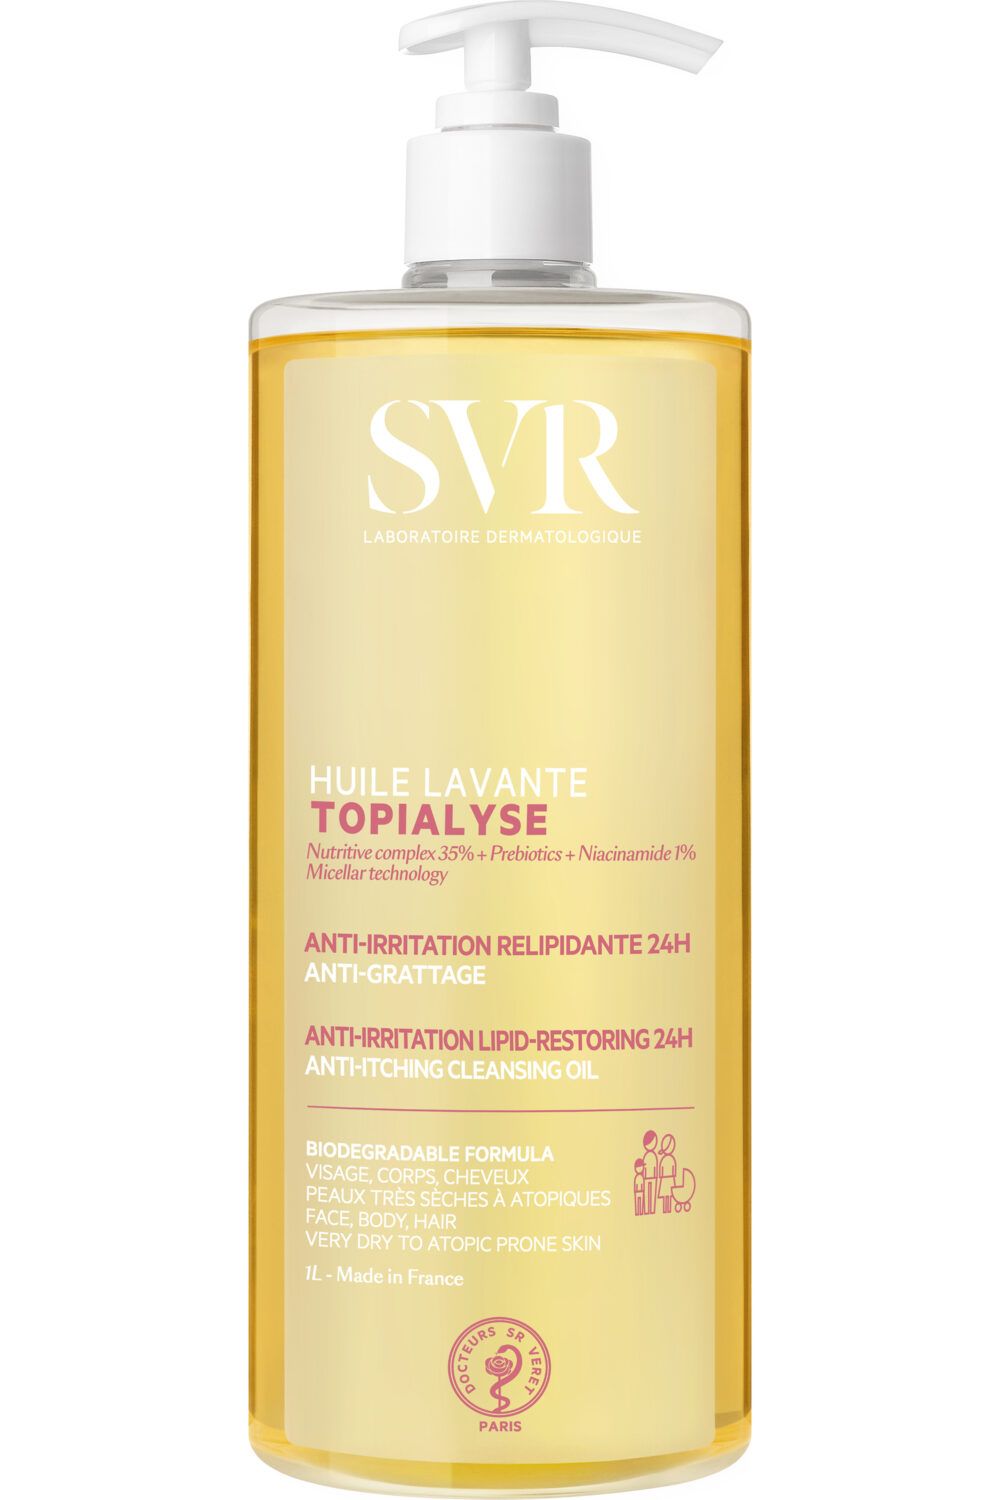 SVR - Huile lavante relipidante anti-grattage Topialyse 1L